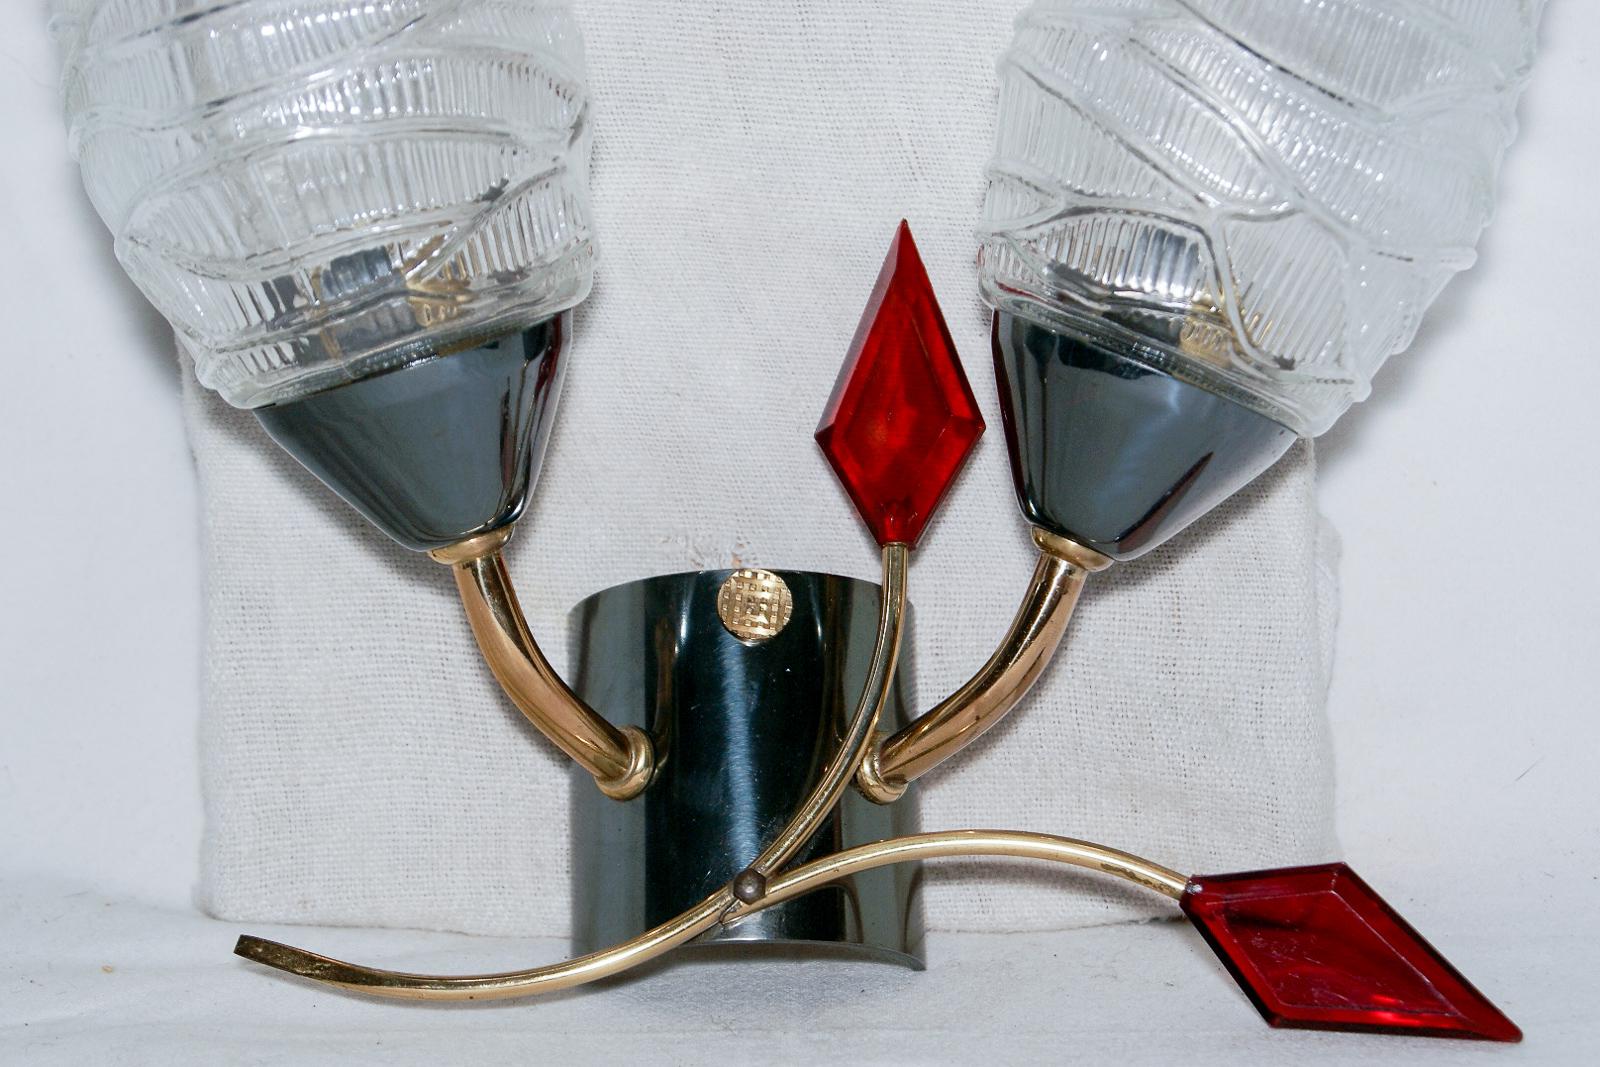 Ein elegantes Paar Wandleuchten aus der Mitte des Jahrhunderts von Maison Arlus, 1950er-1960er Jahre, Frankreich.

Diese modernen Originale aus der Mitte des Jahrhunderts (1950-1960) haben zwei konische Glasschirme, die auf einer asymmetrisch